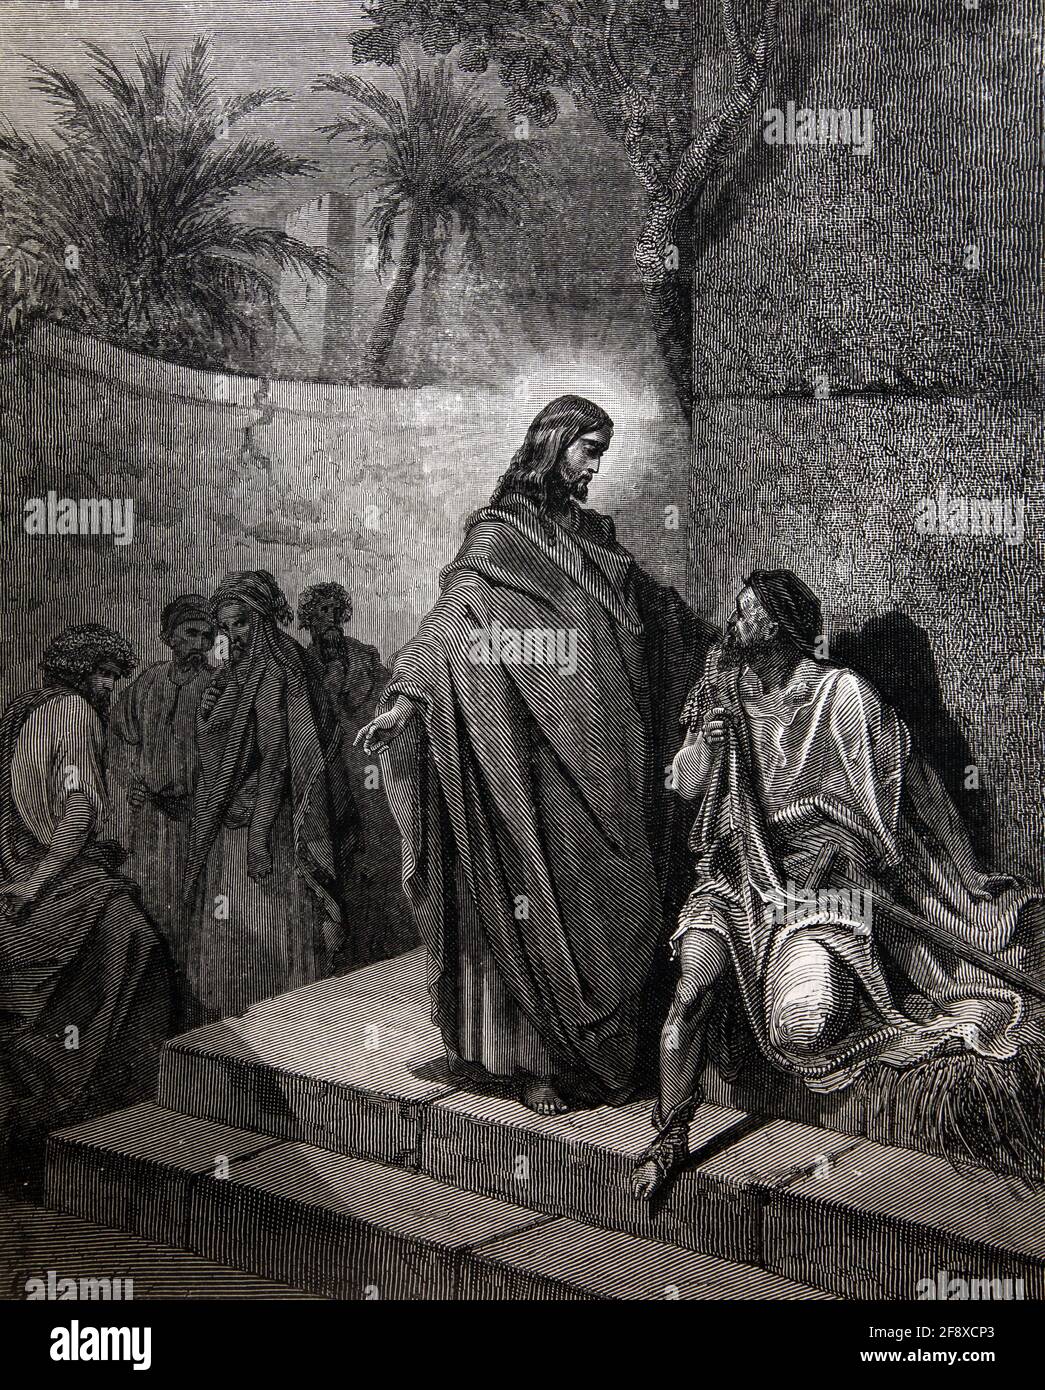 Histoire de la Bible Illustration Jésus Christ guérir l'homme malade de Palsy (Matthieu 12:22-25) par Gustave Dore Banque D'Images